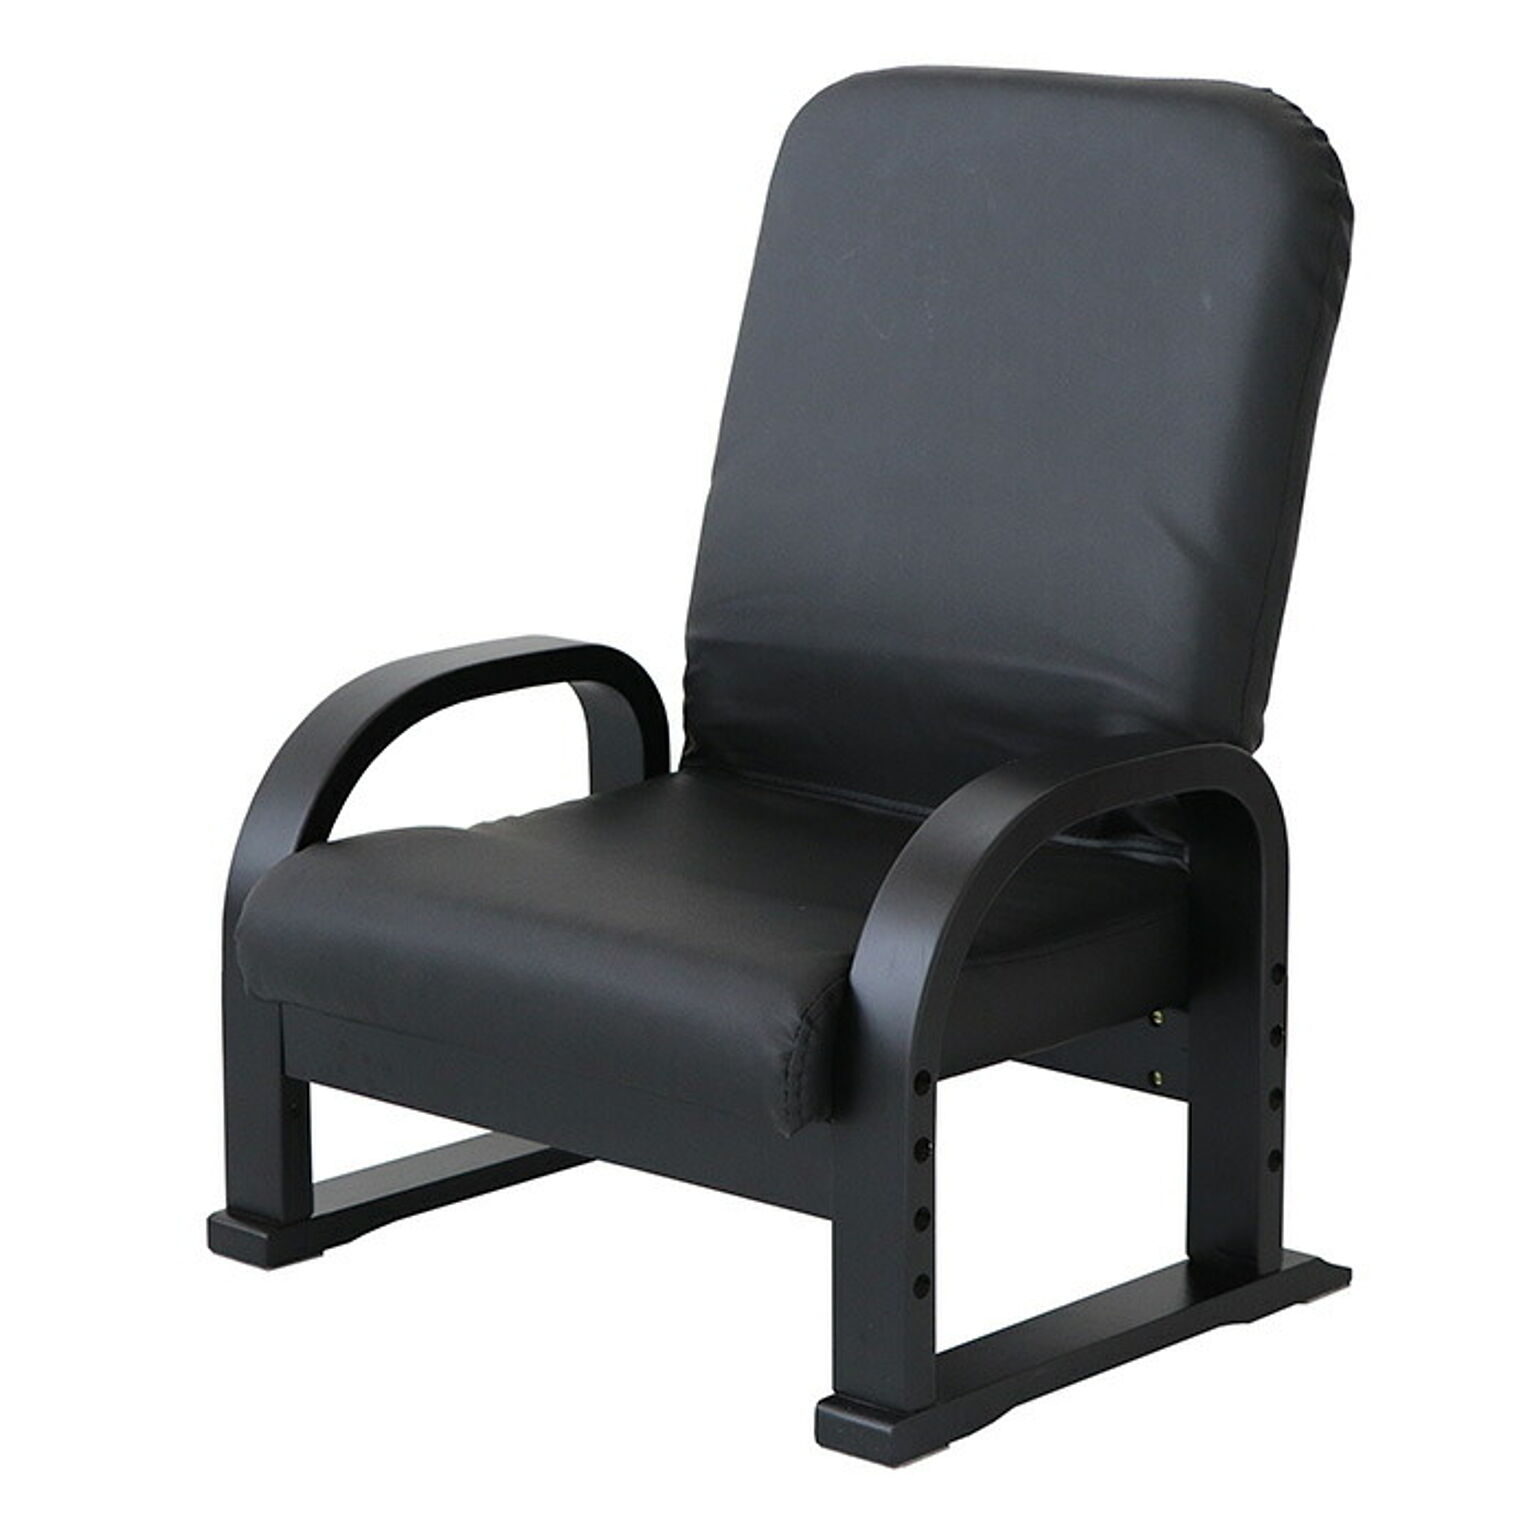 1年保証 高座椅子 安楽椅子 チェア  いす リラックスチェア リクライニングチェア 座敷椅子 和室 テレビ座椅子  早苗